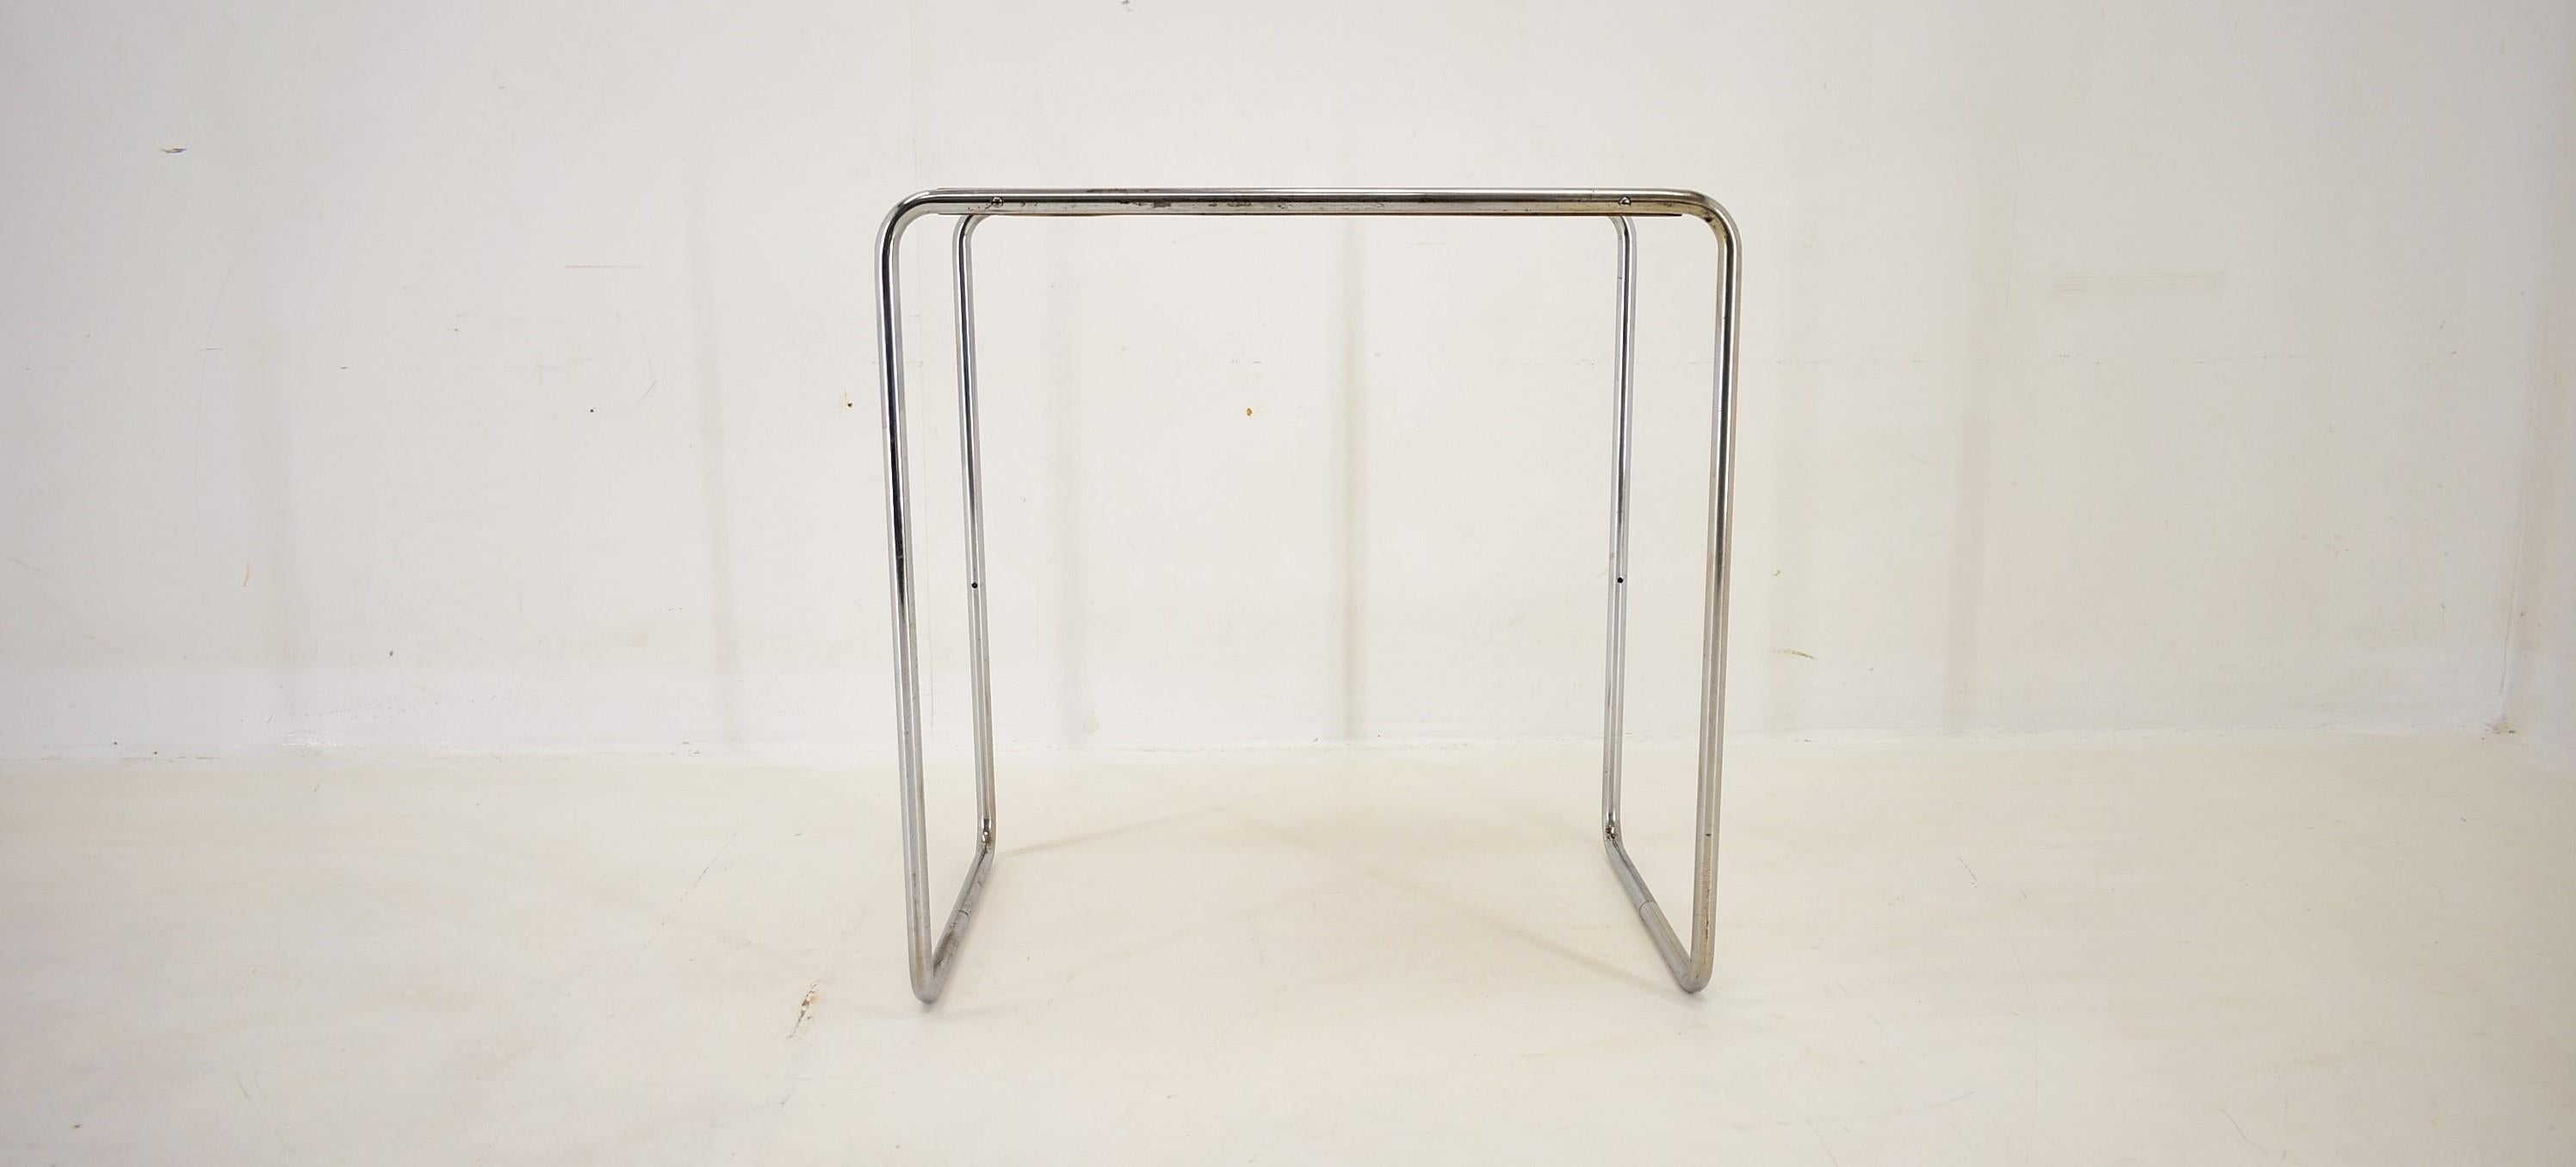 Chrome Table chromée Bauhaus de Marcel Breuer pour Mucke Melder, années 1930 en vente